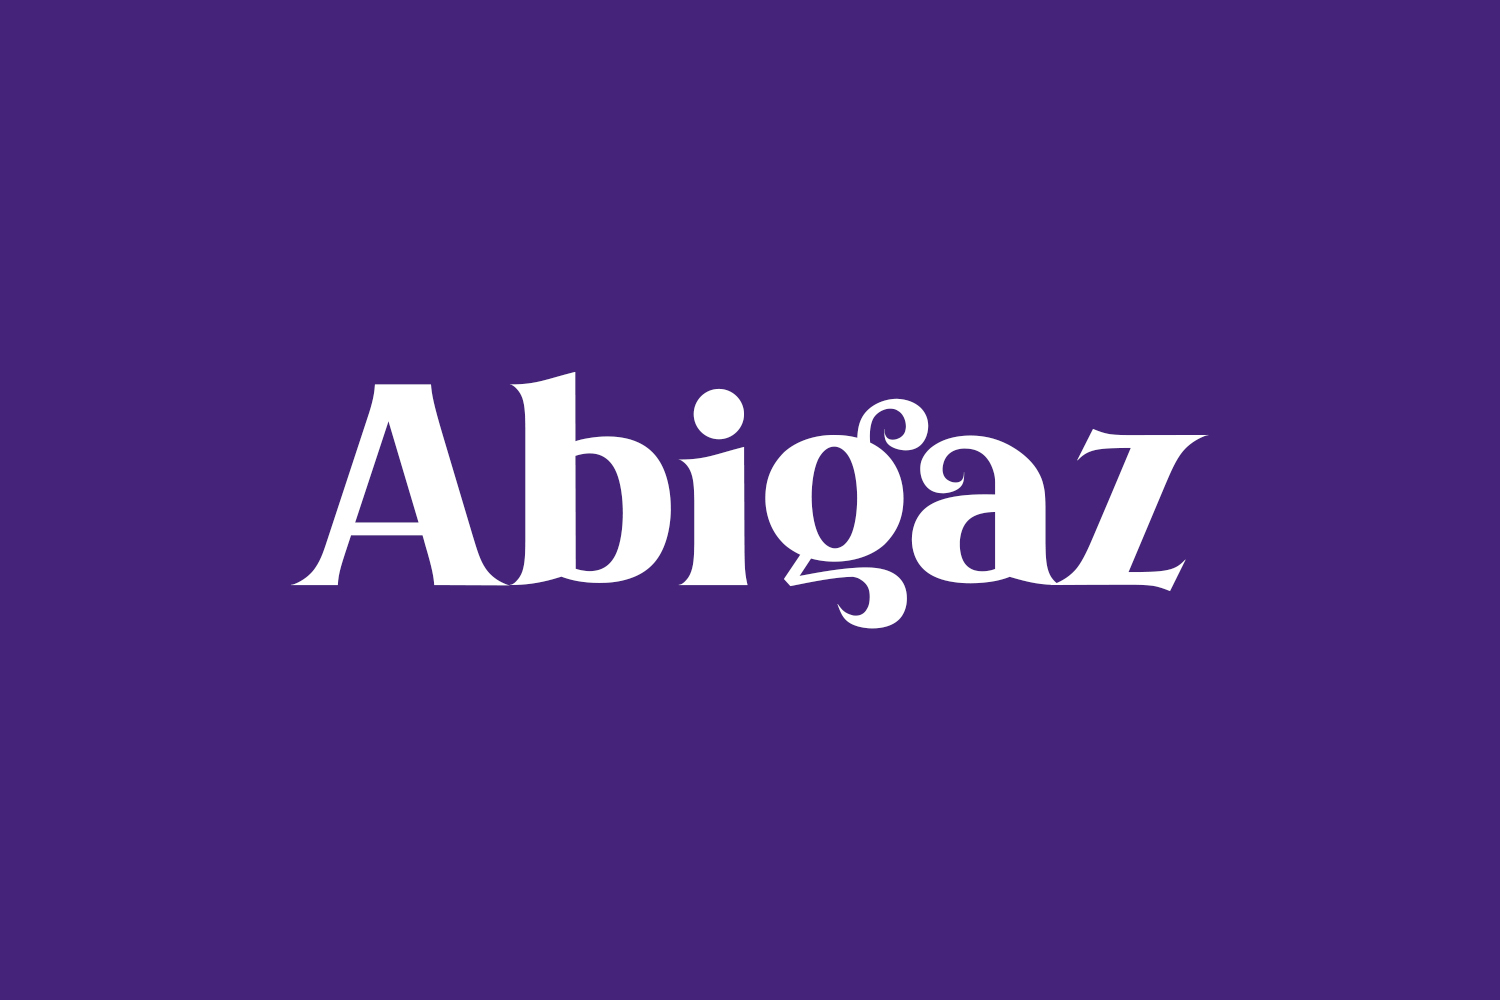 Free Abigaz Font